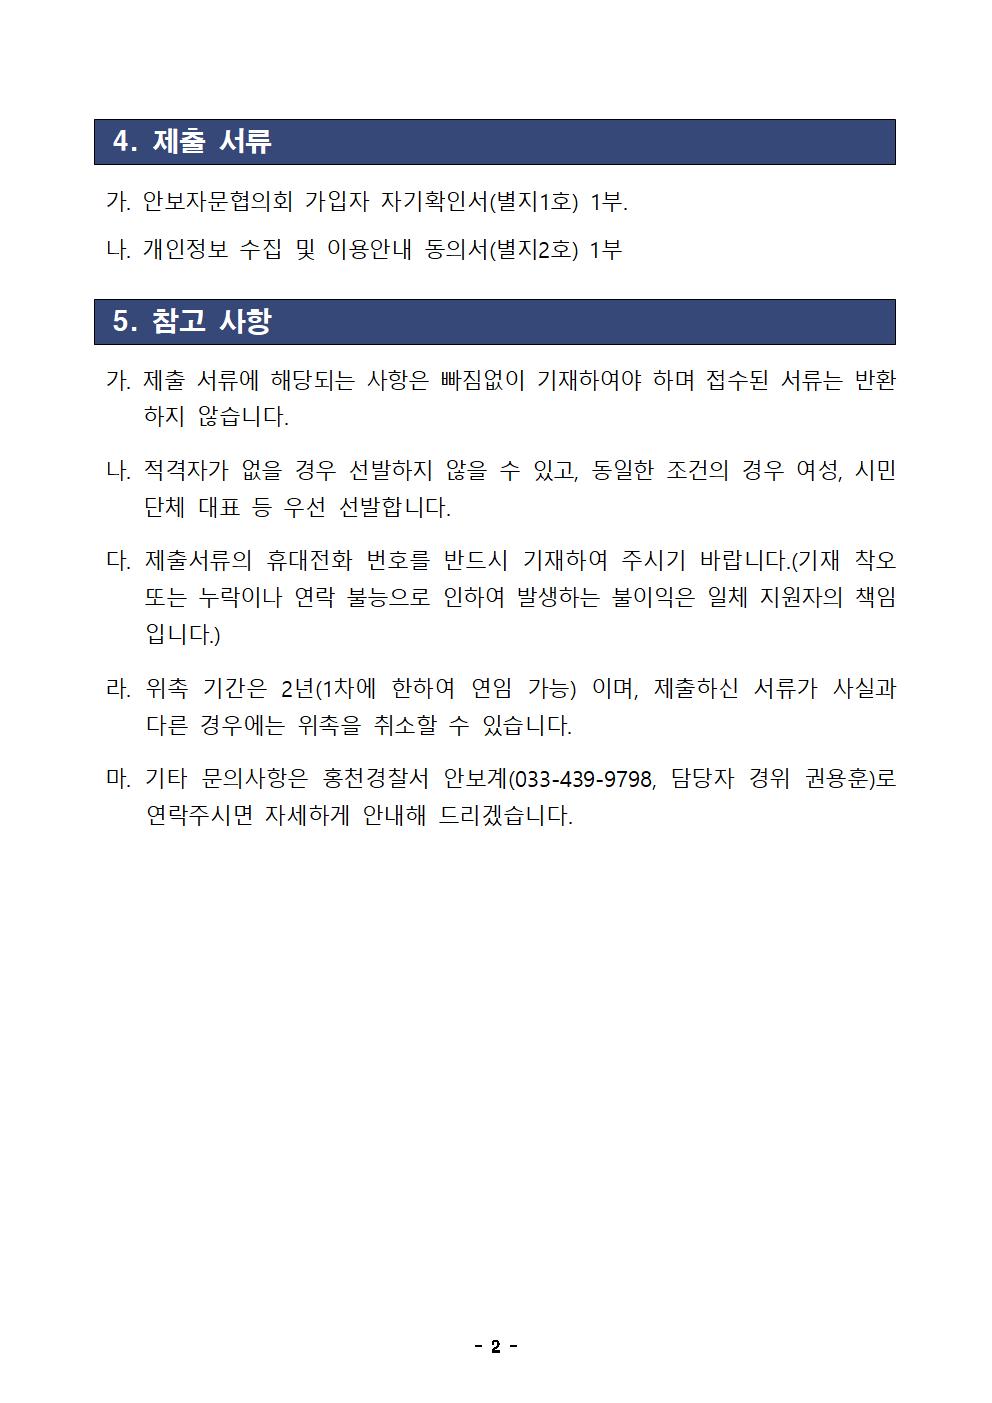 안보자문협의회 모집공고-23년 홍천경찰서 안보자문협의회 모집 공고(2차)002